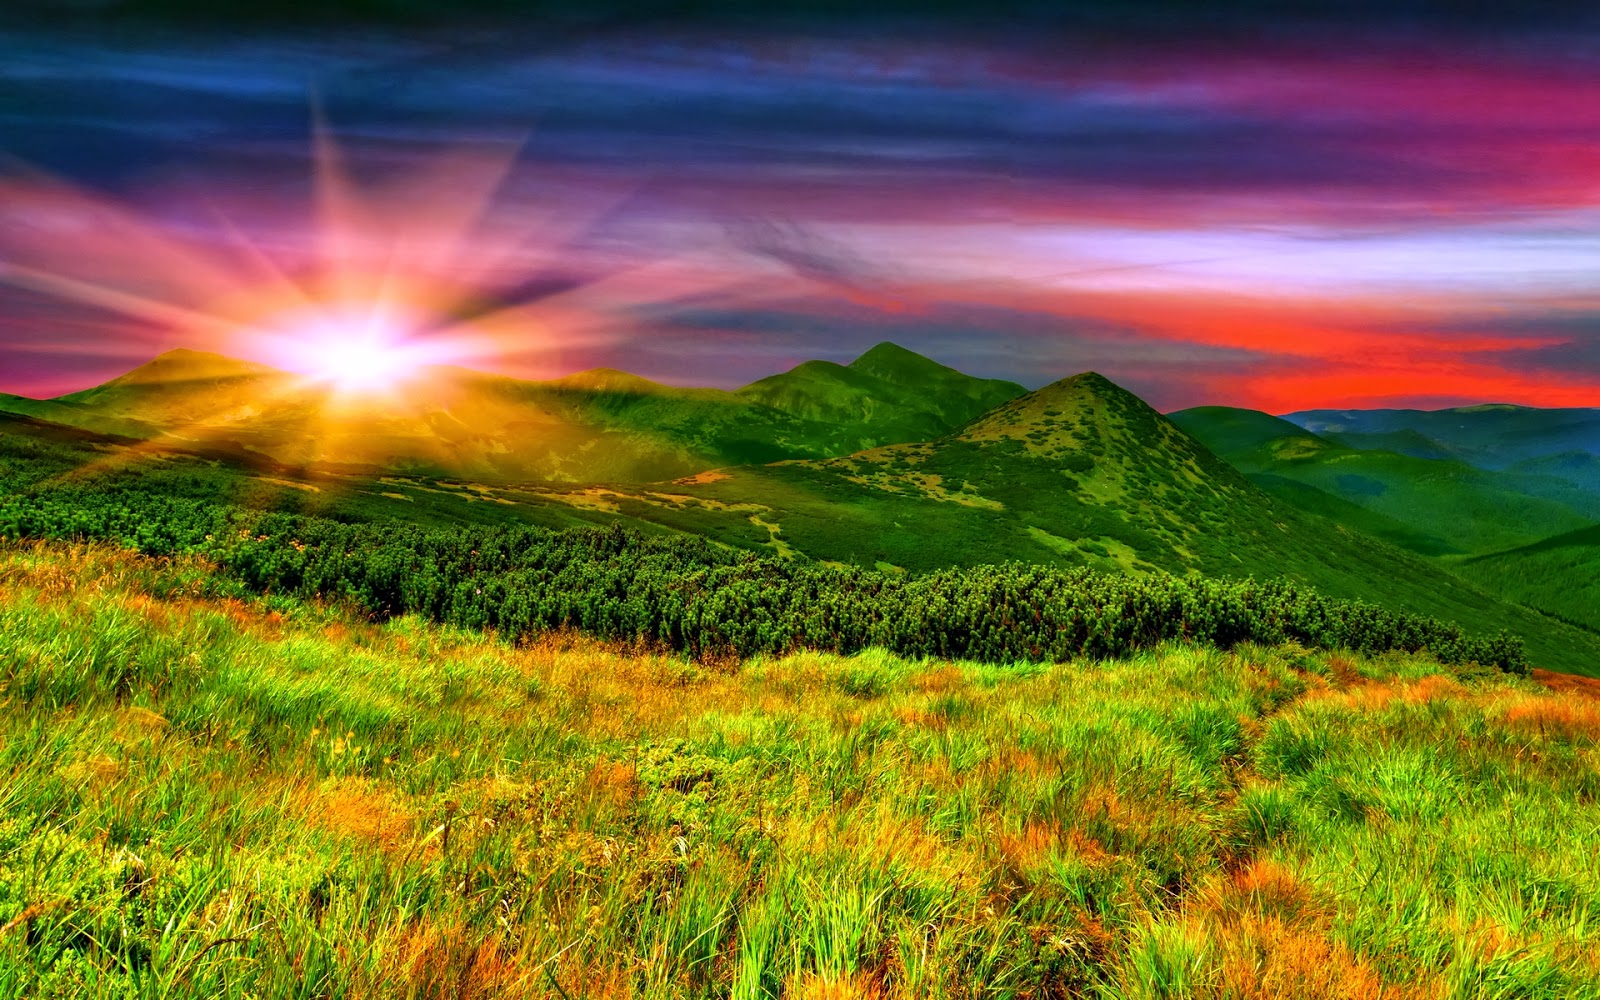 วิว ภูเขา พระอาทิตย์ , HD Wallpaper & Backgrounds